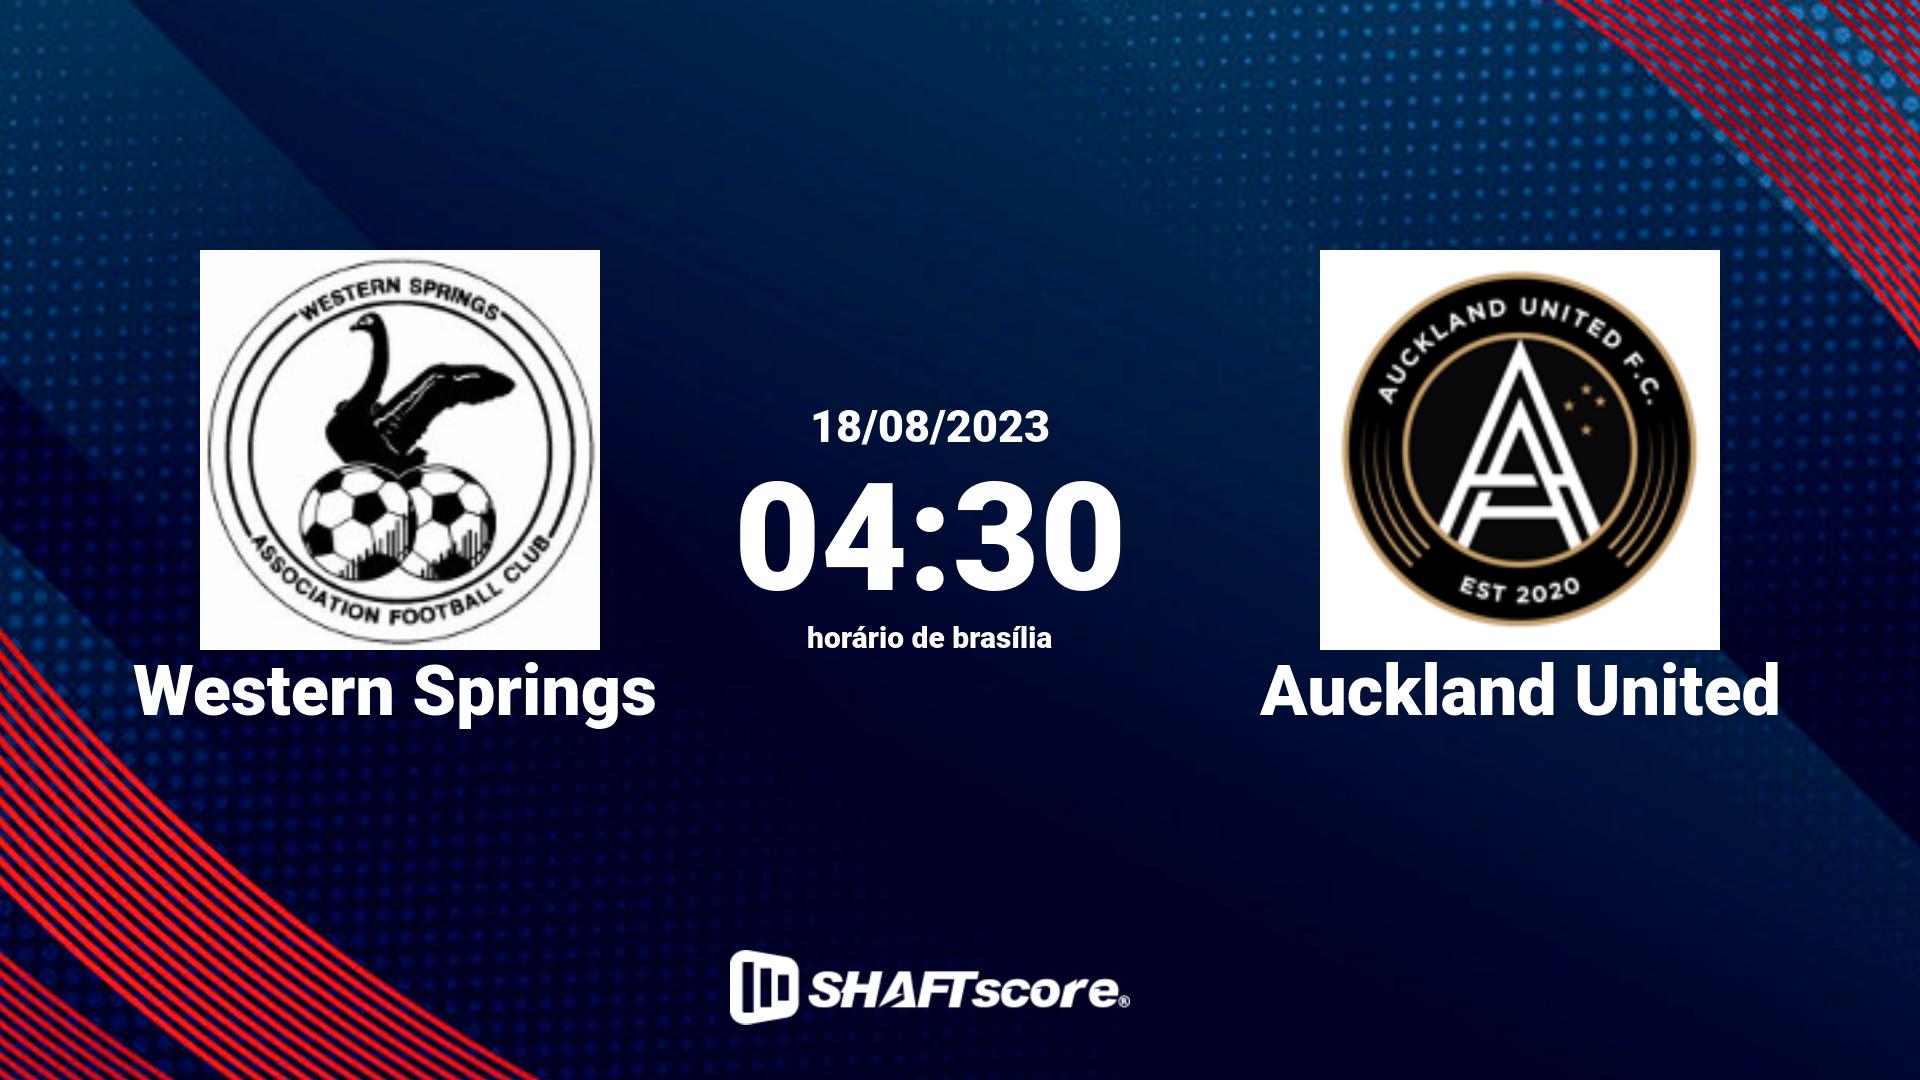 Estatísticas do jogo Western Springs vs Auckland United 18.08 04:30